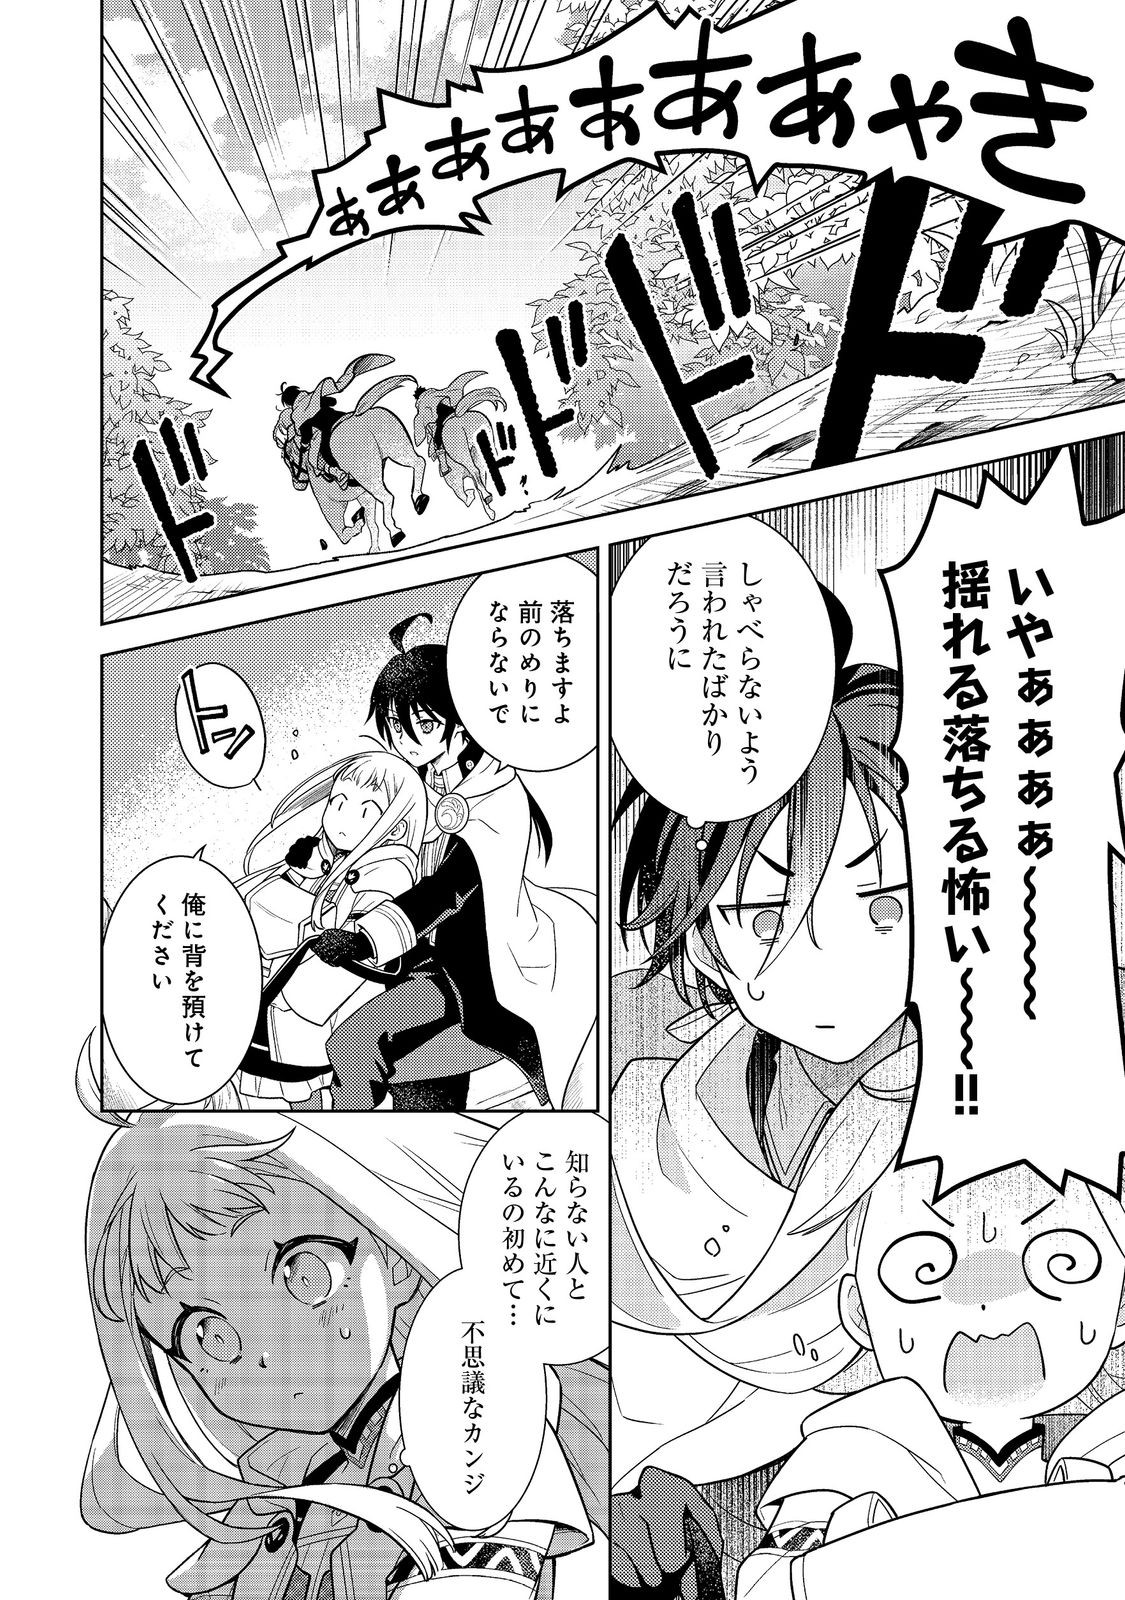 Mori no Hashikko no Chibi Majo-san - Chapter 1 - Page 25